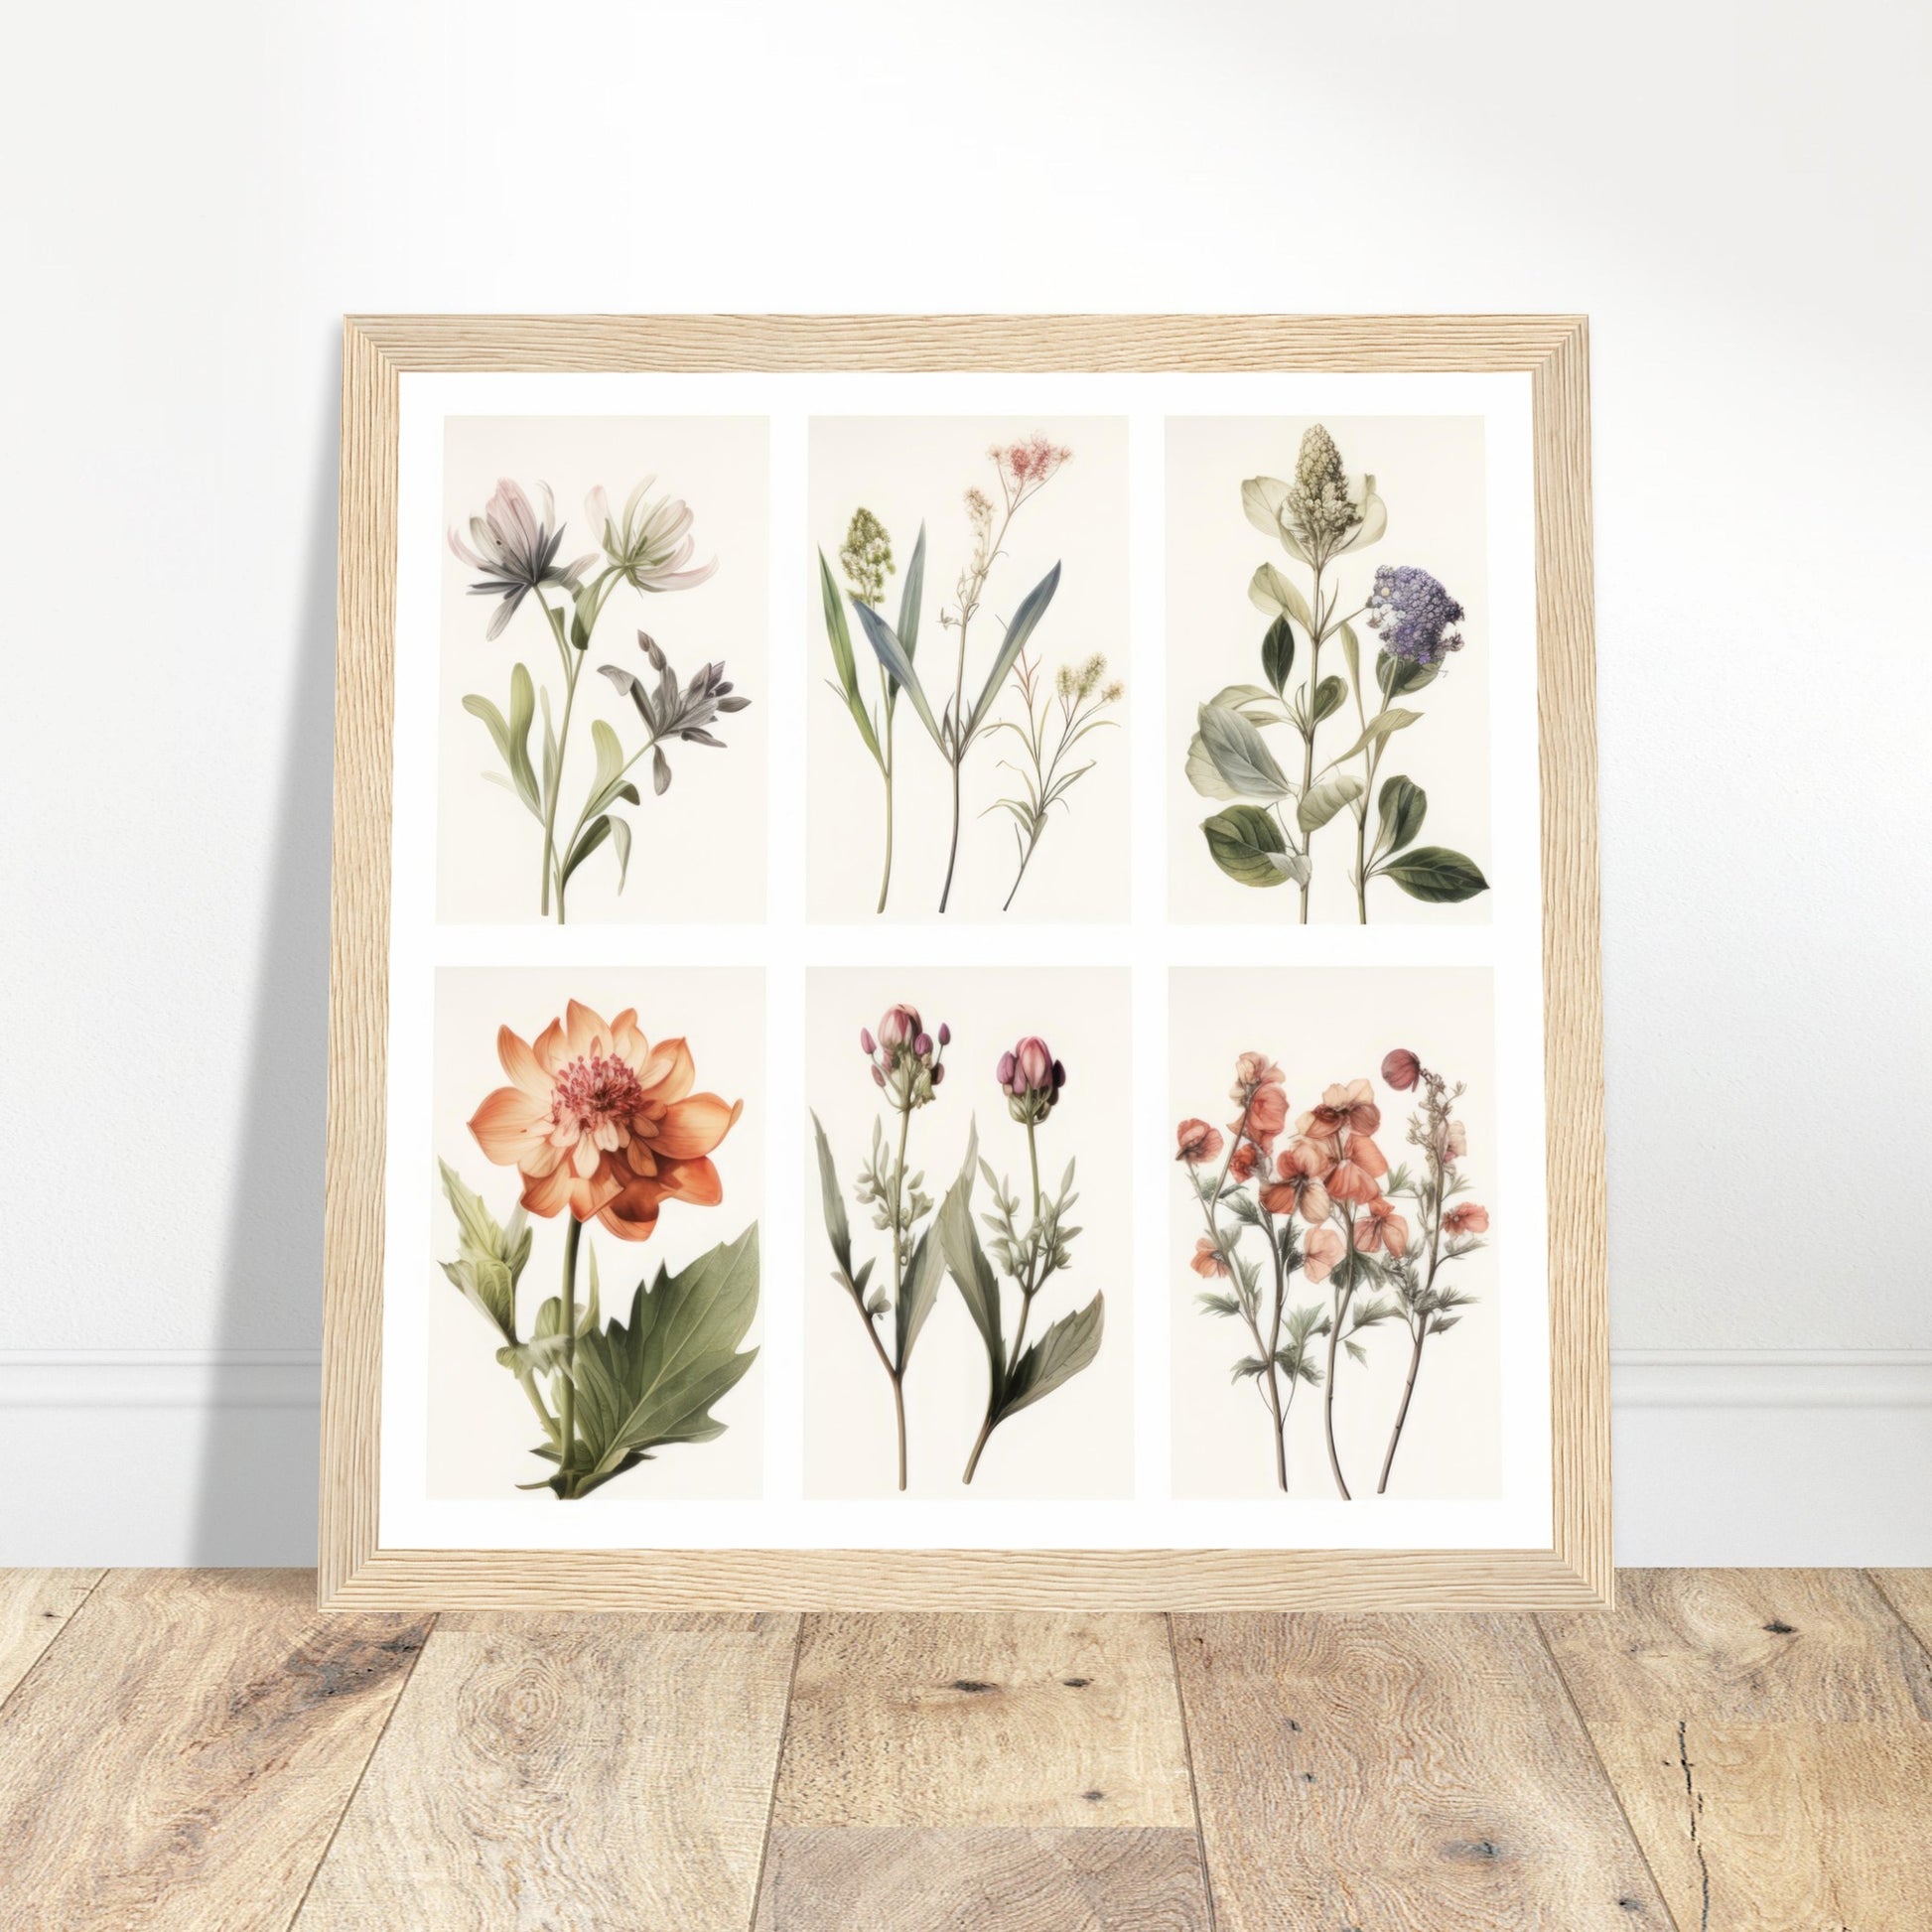 Elegance - Botanical Artwork #3- Print Room Ltd White frame 50x50 cm / 20x20"